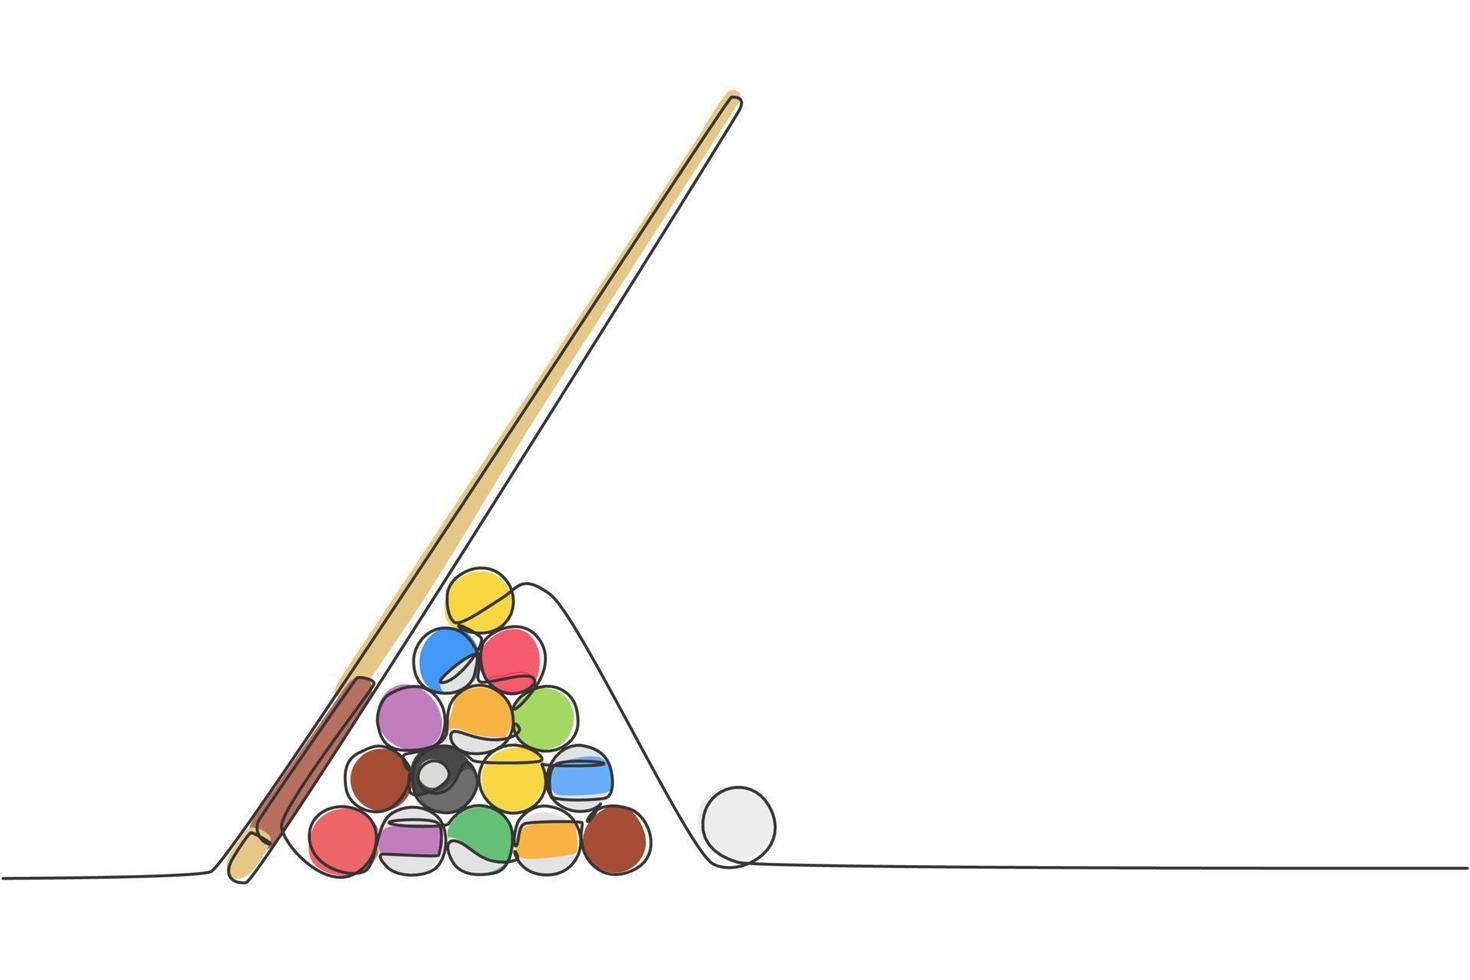 un dibujo de línea continua de la pila de bolas de pirámide triangular para el juego de billar en la sala de billar. concepto de juego de deporte de interior de torneo. Ilustración de vector de diseño gráfico de dibujo de línea única dinámica